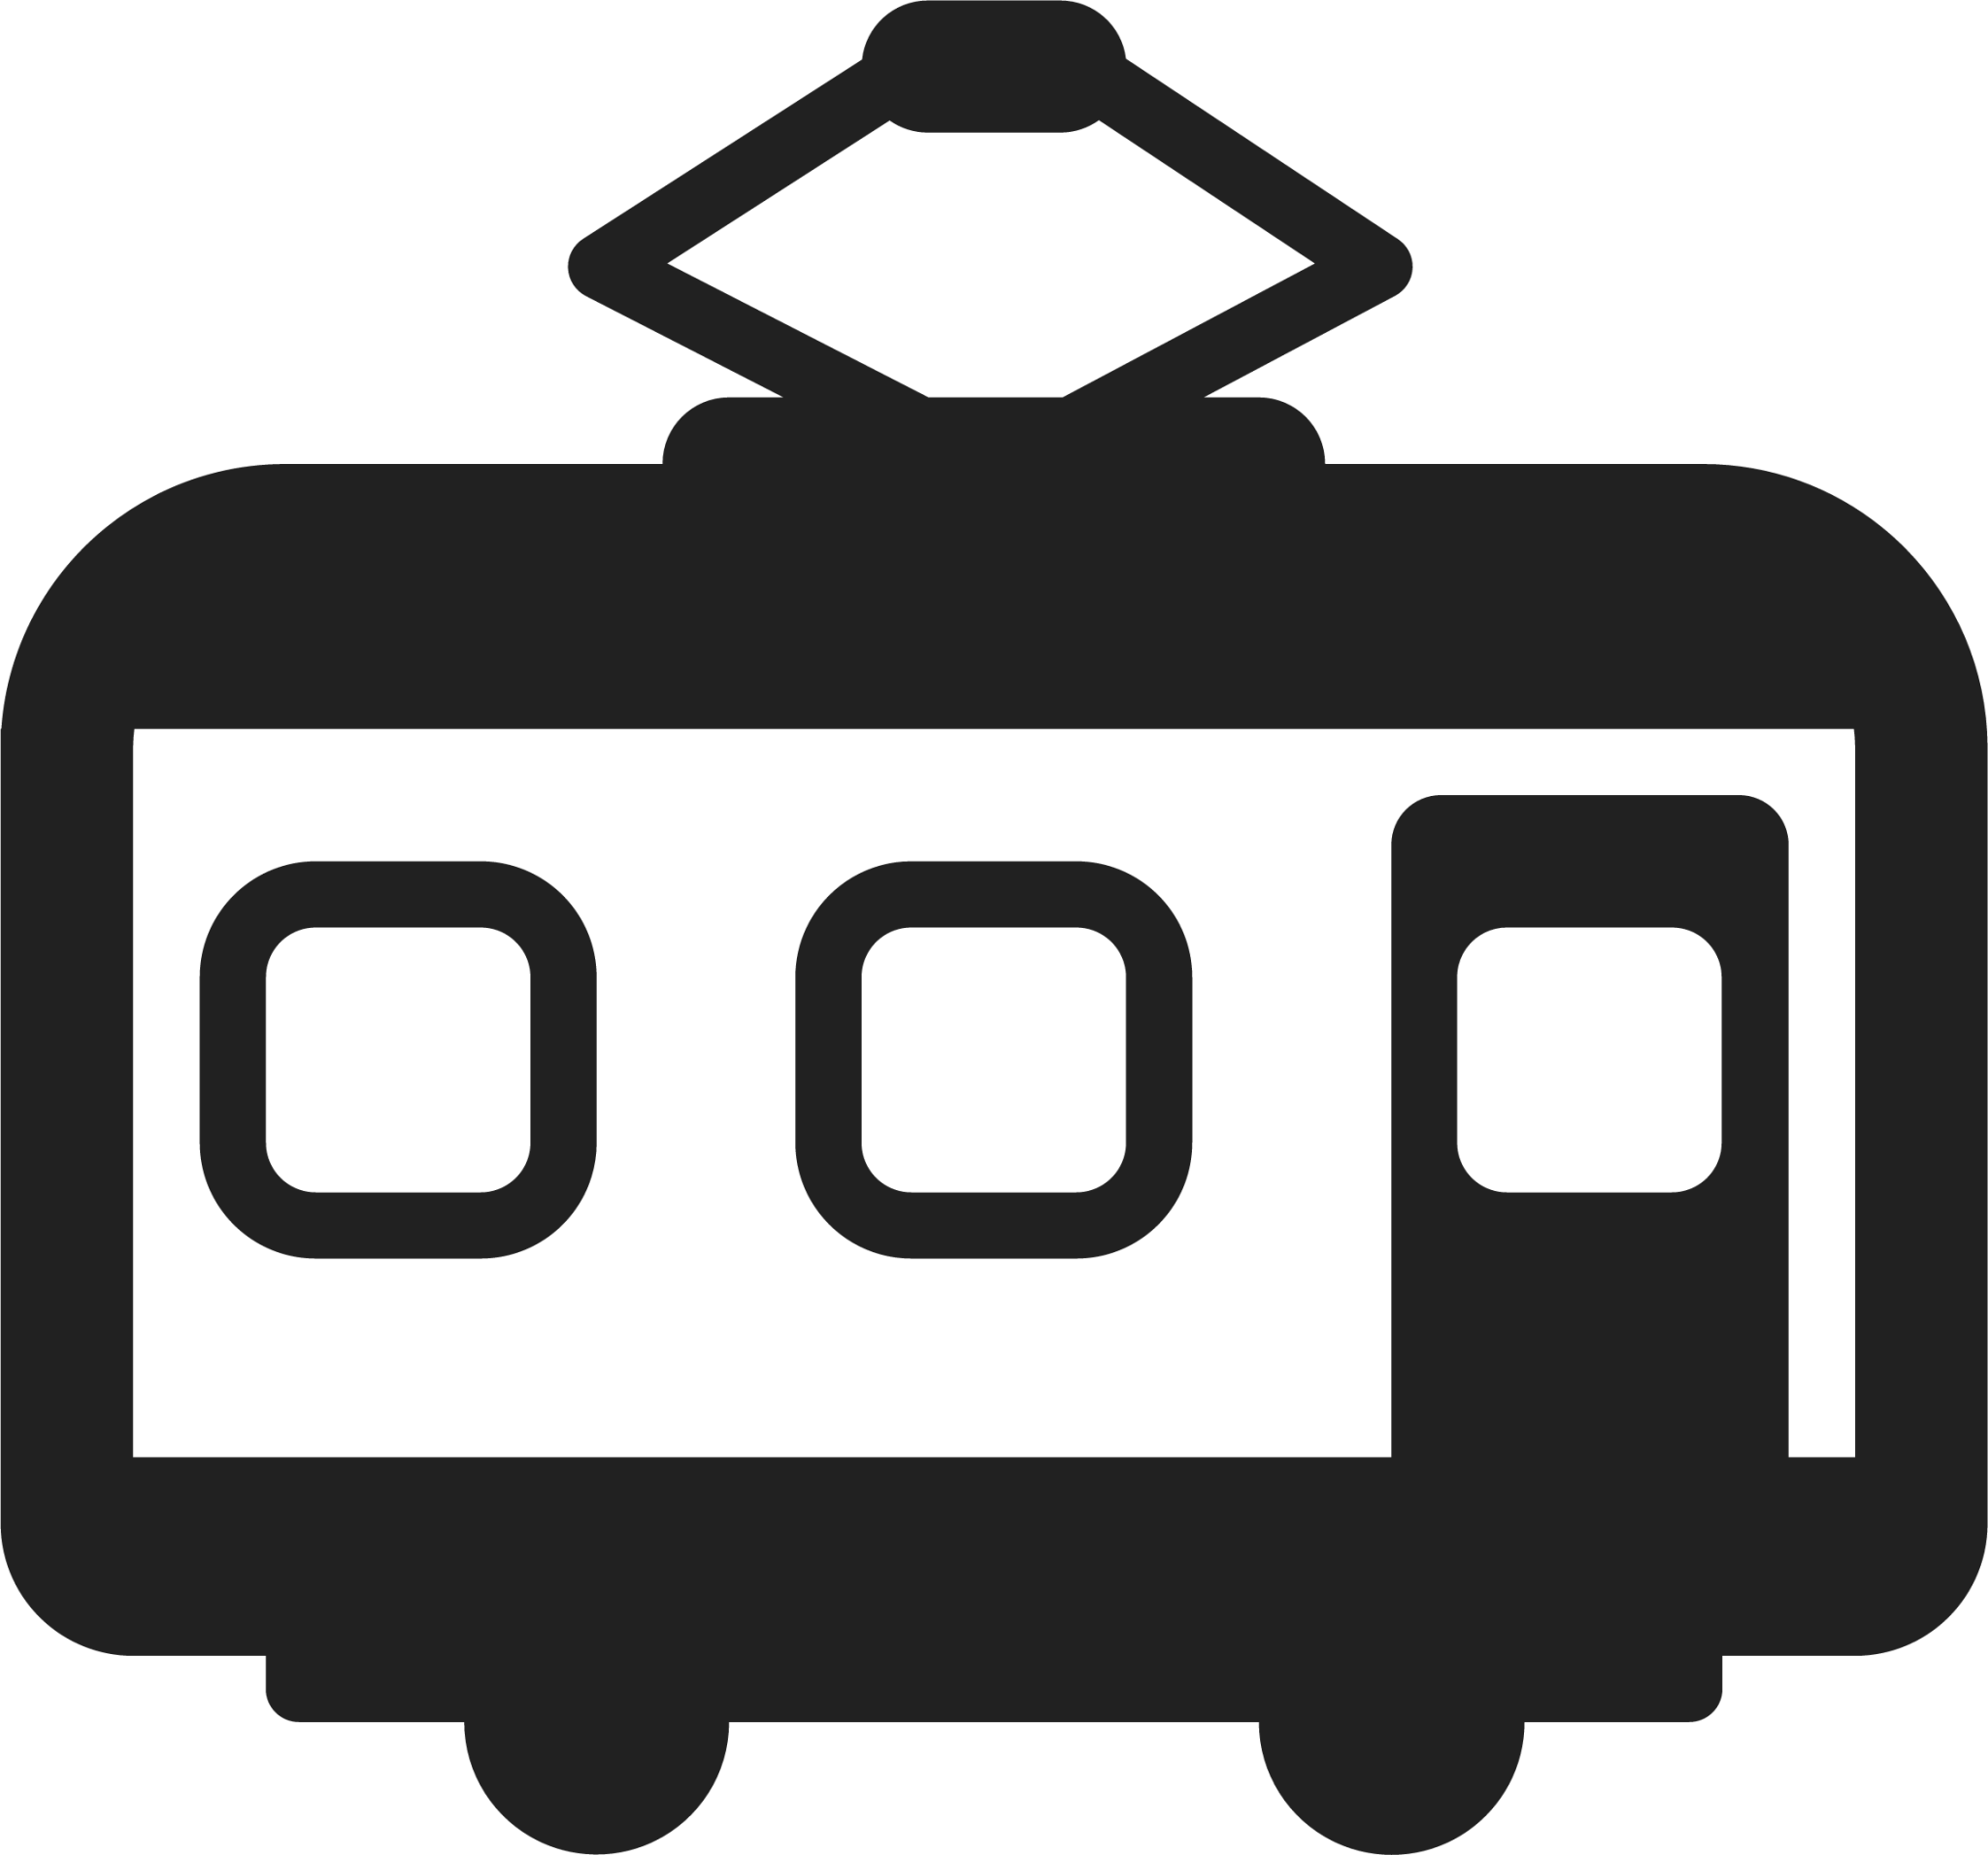 railway car emoji